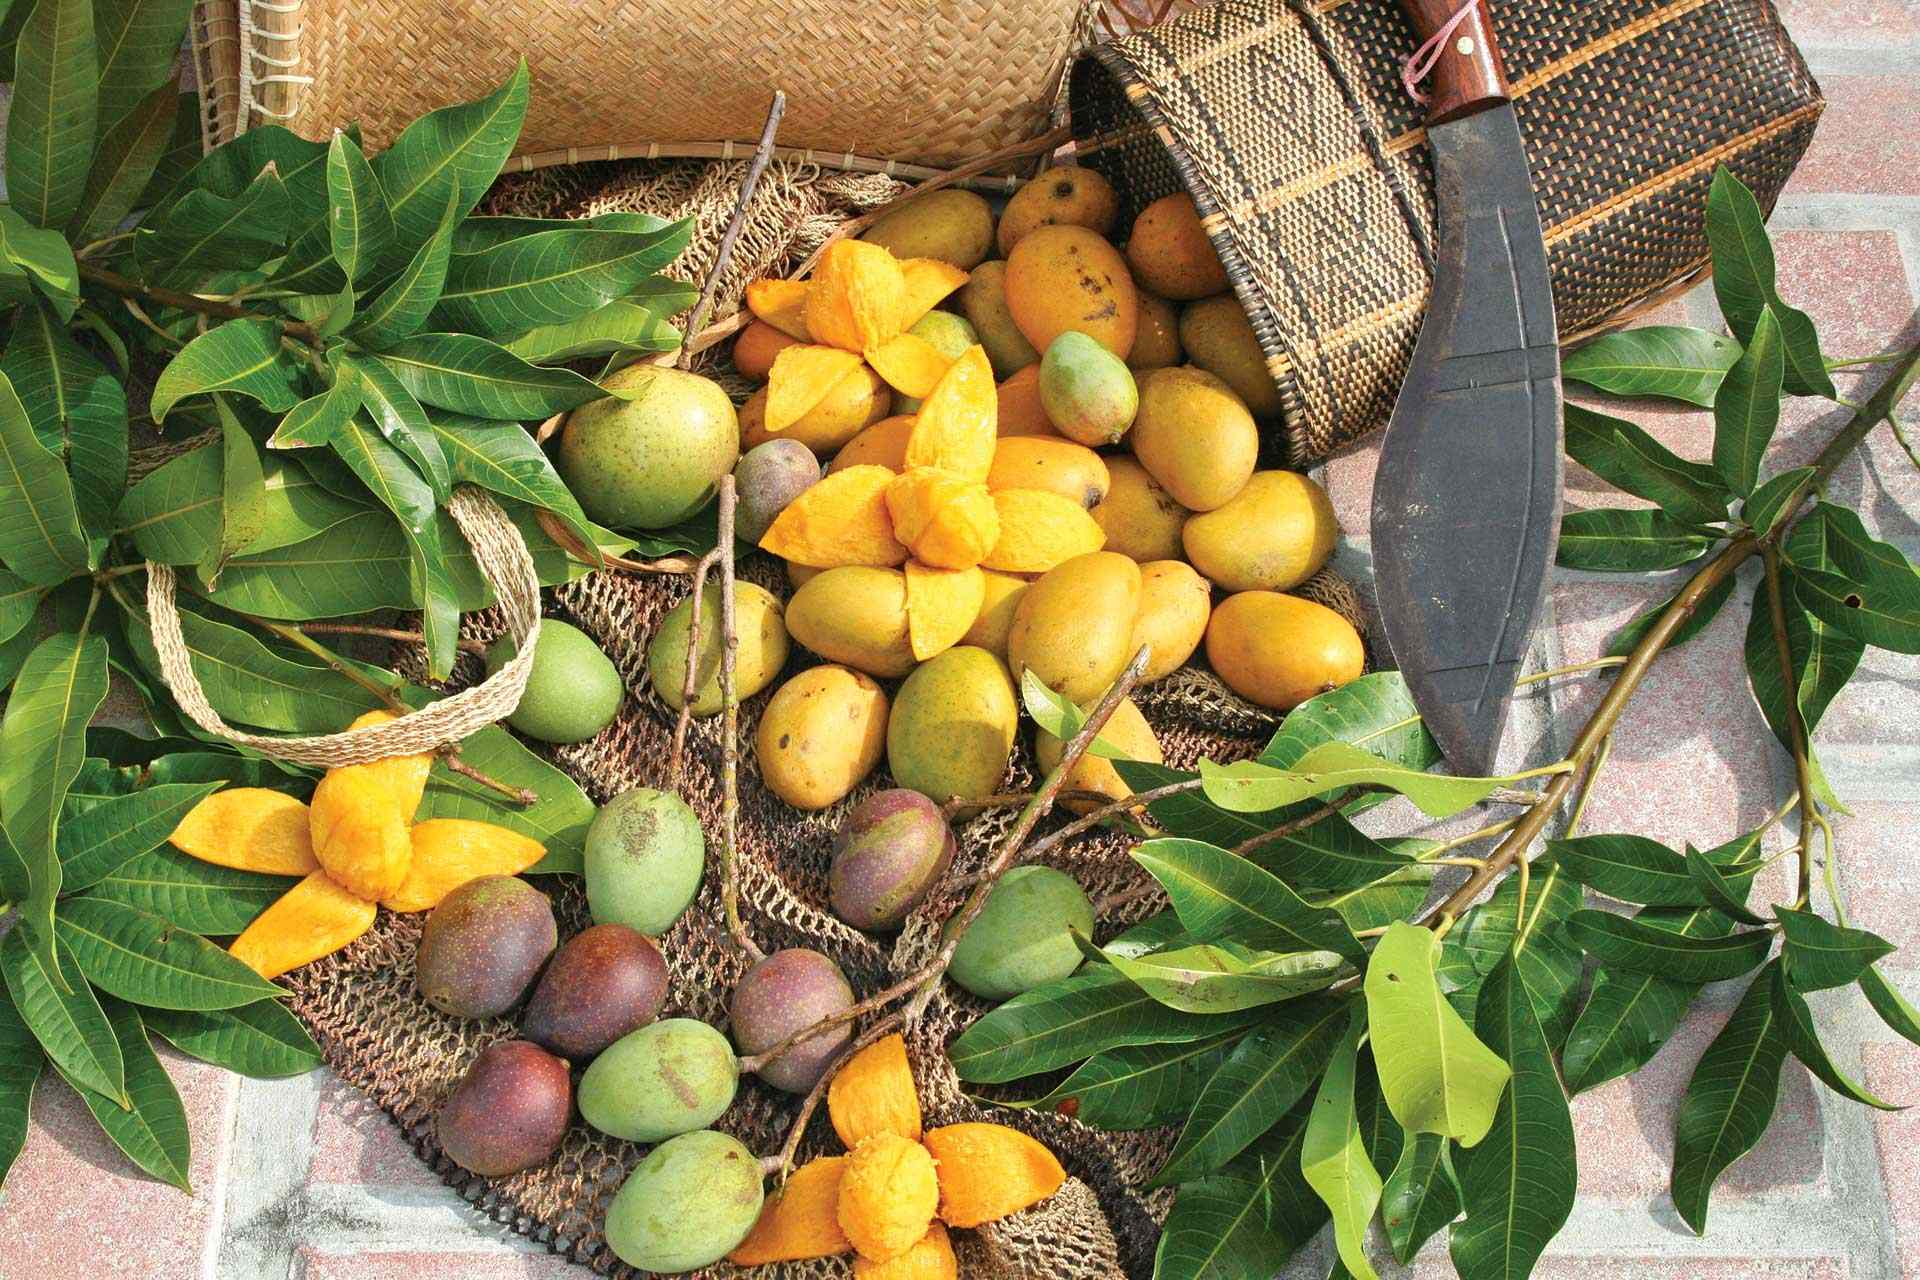 Wild mangos harvested at the Fairchild Farm